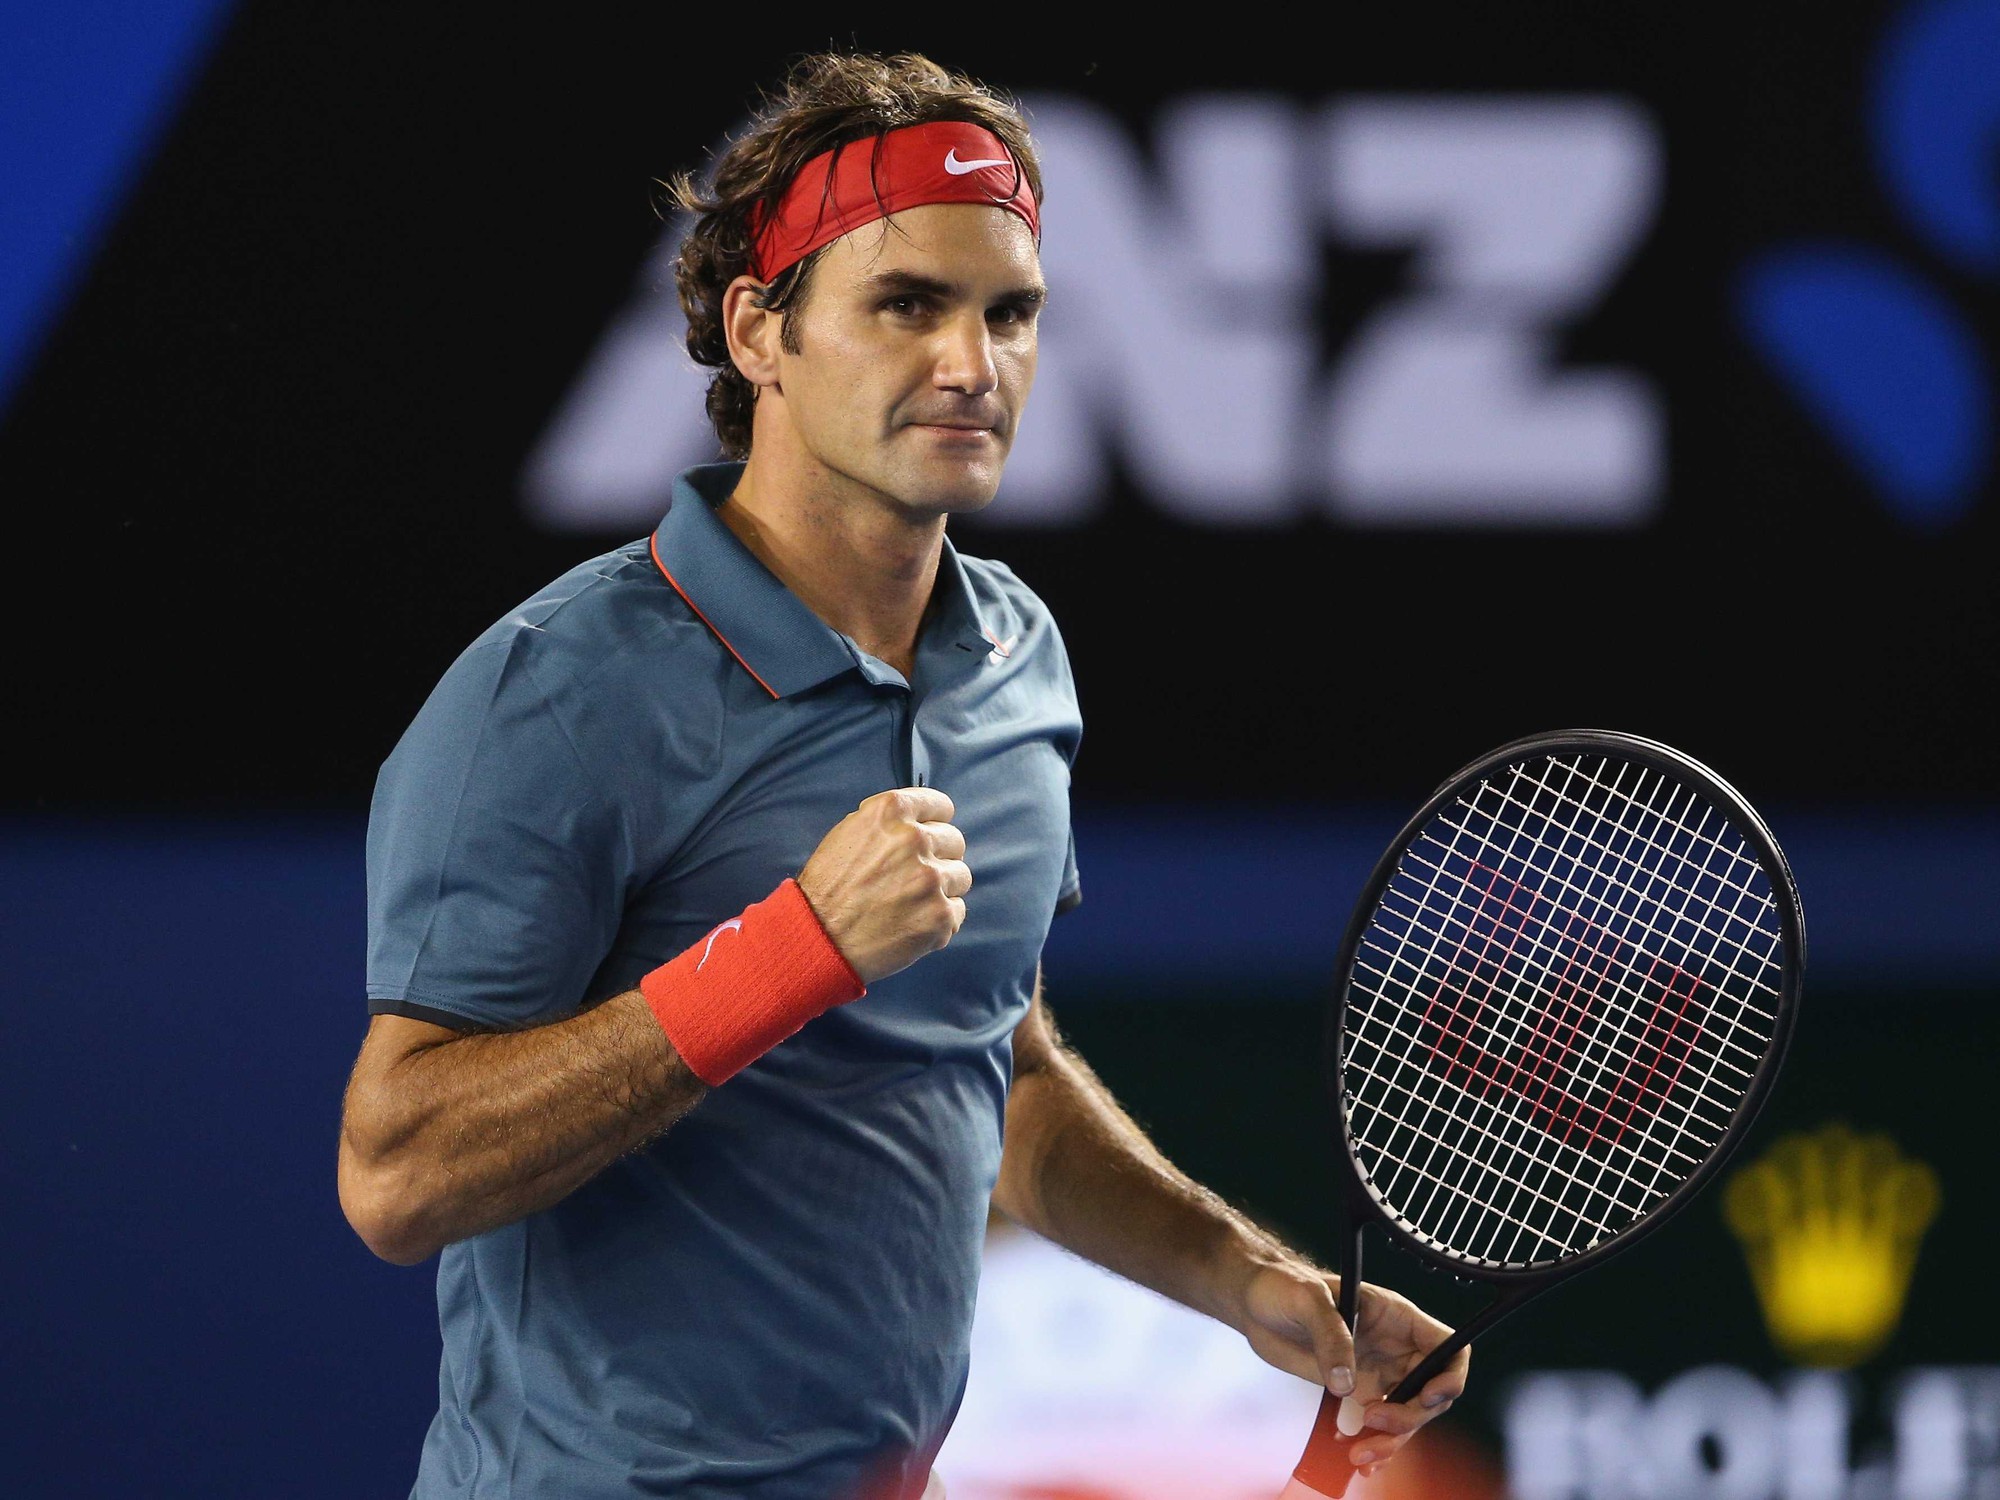 Tay Vợt Roger Federer Sẽ Quay Lại Thi Đấu Trong Tháng 3 Sắp Tới